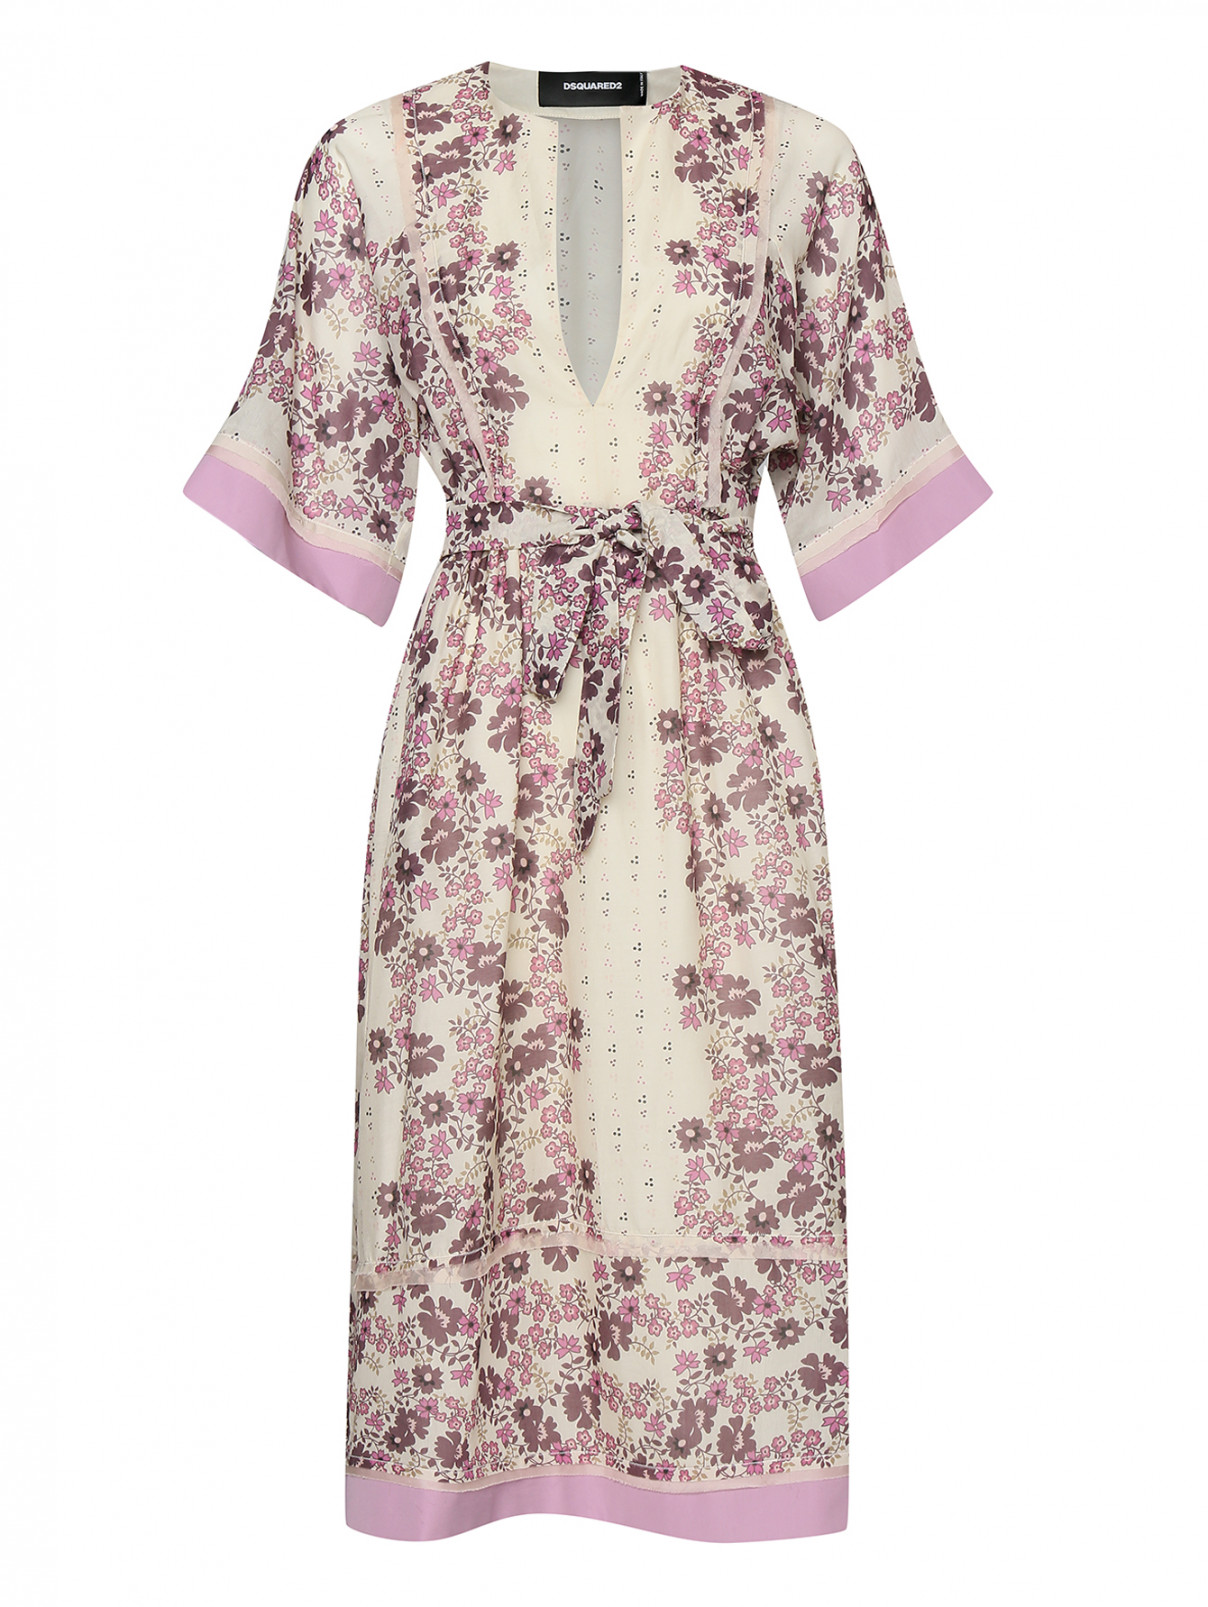 Платье из хлопка и шелка с цветочным принтом Dsquared2  –  Общий вид  – Цвет:  Бежевый